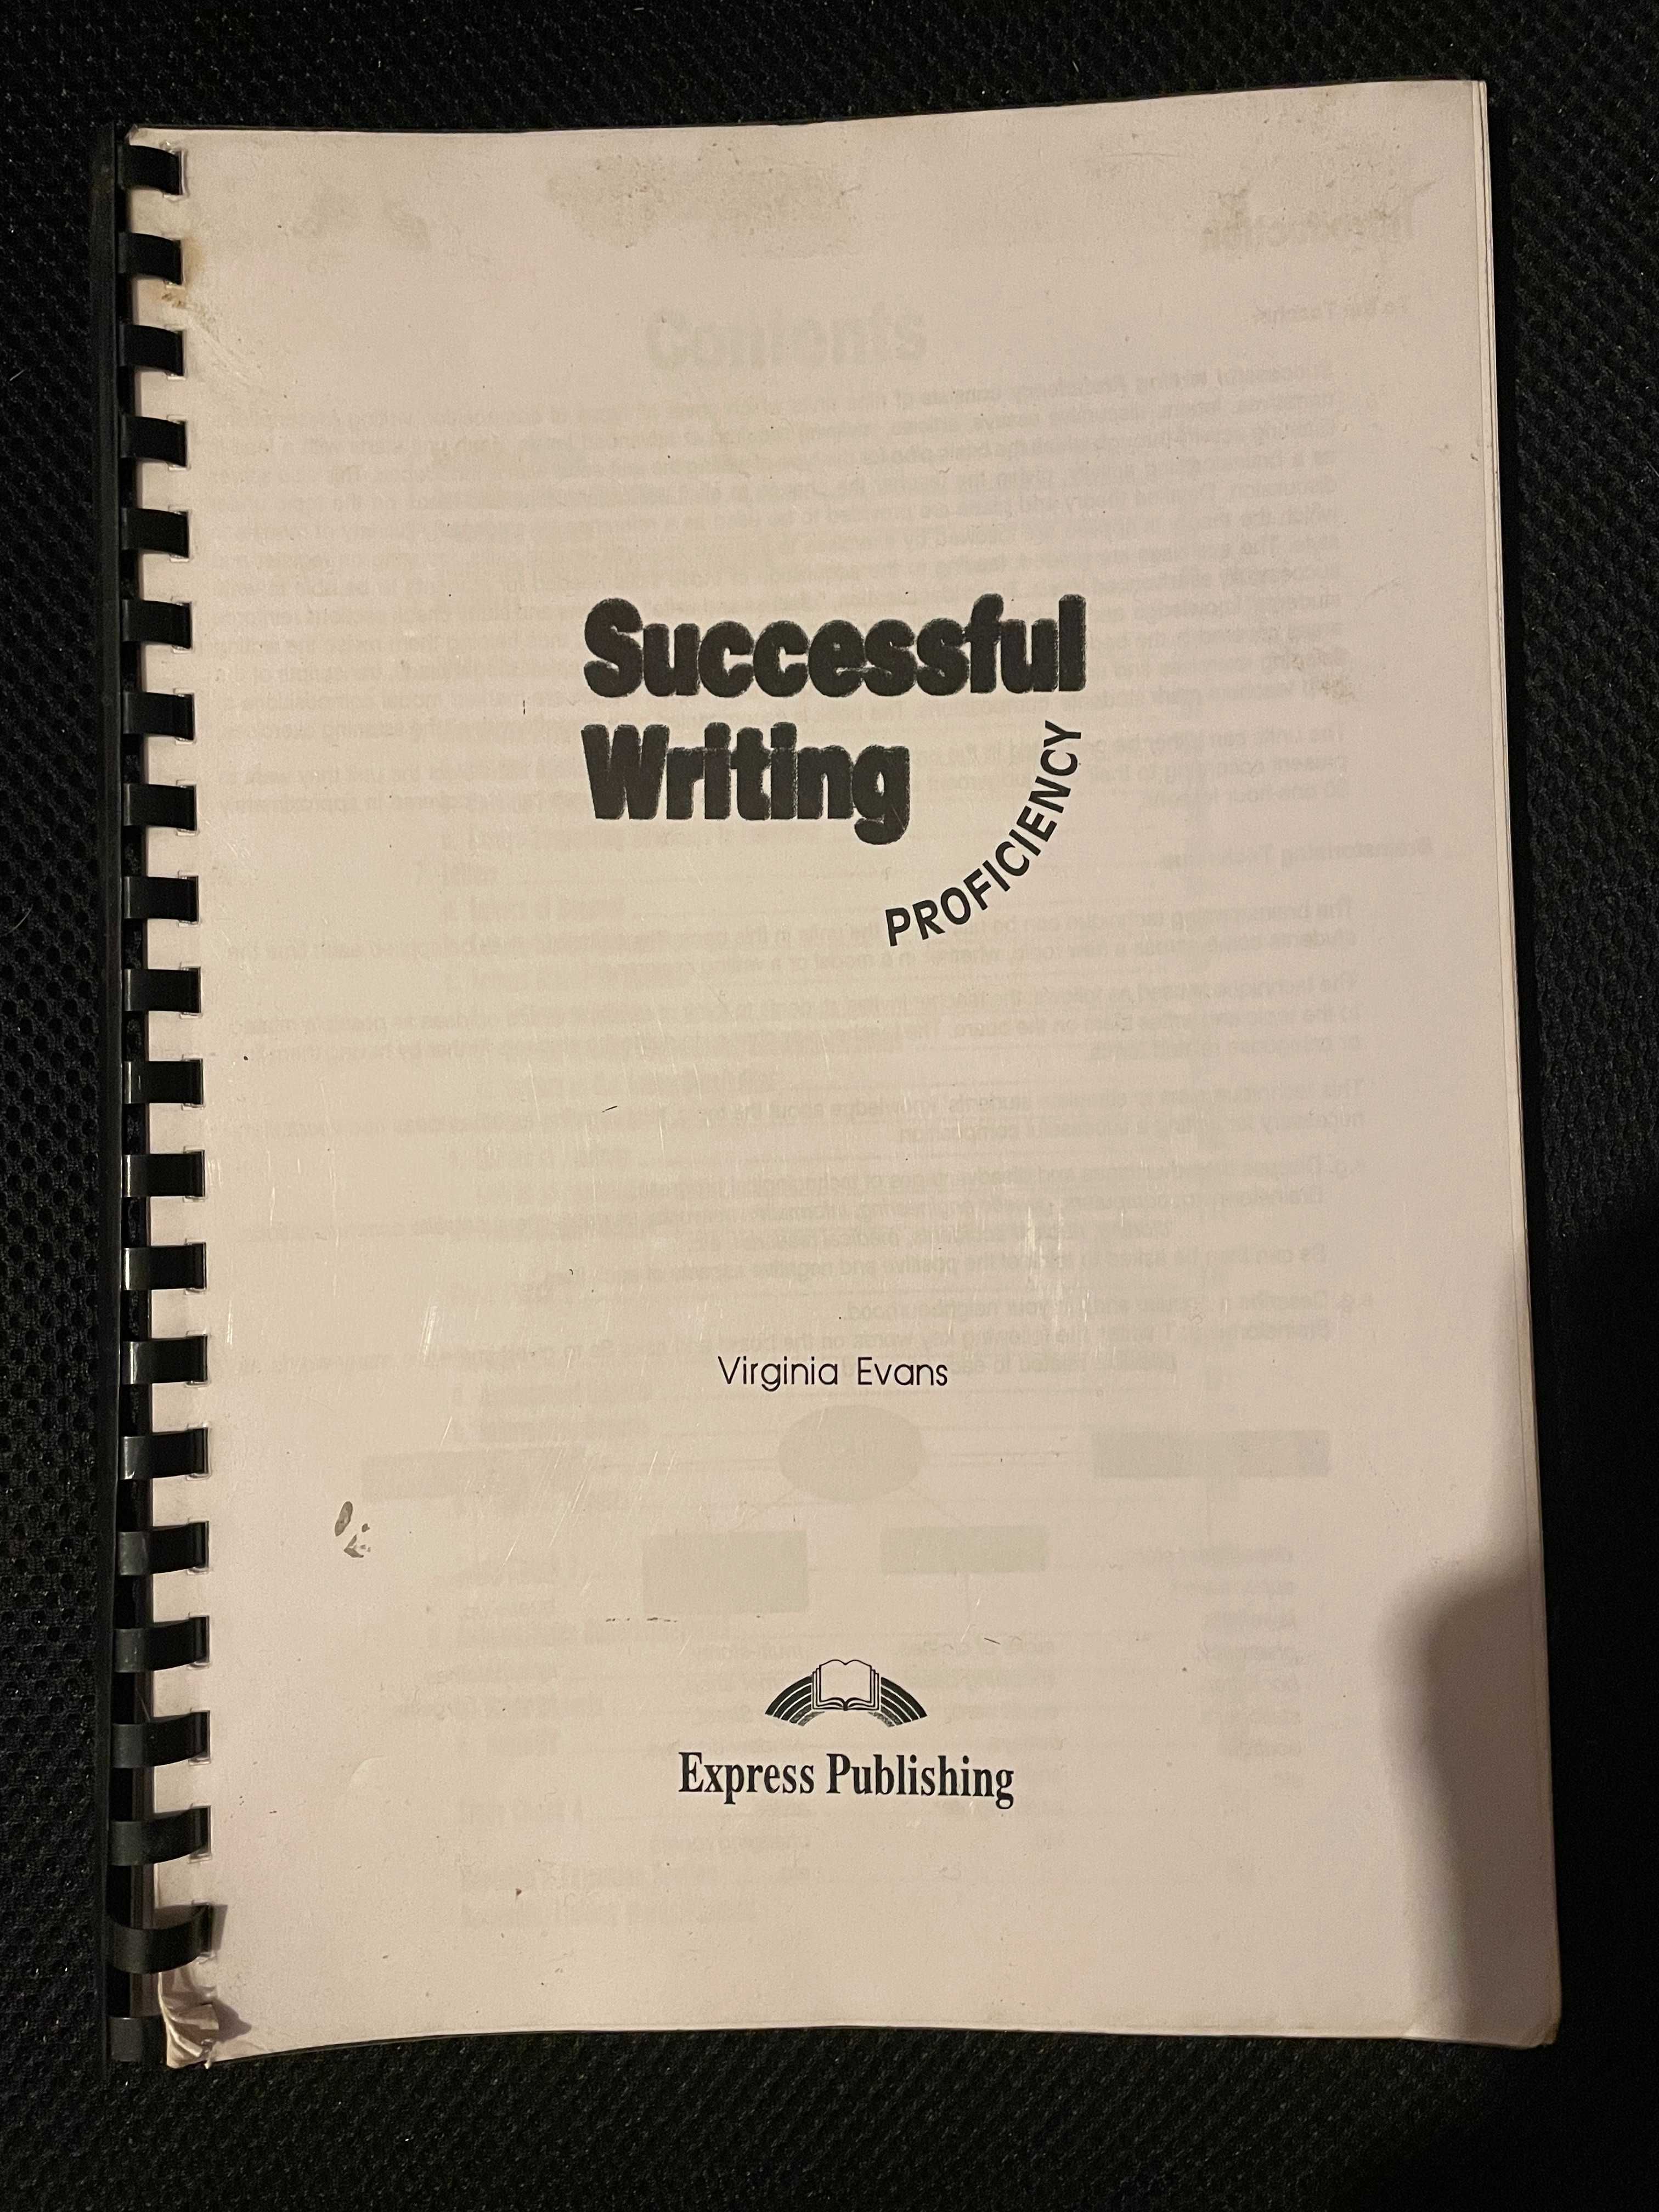 Curs engleza - Successful Writing Proficiency, Virginia Evans